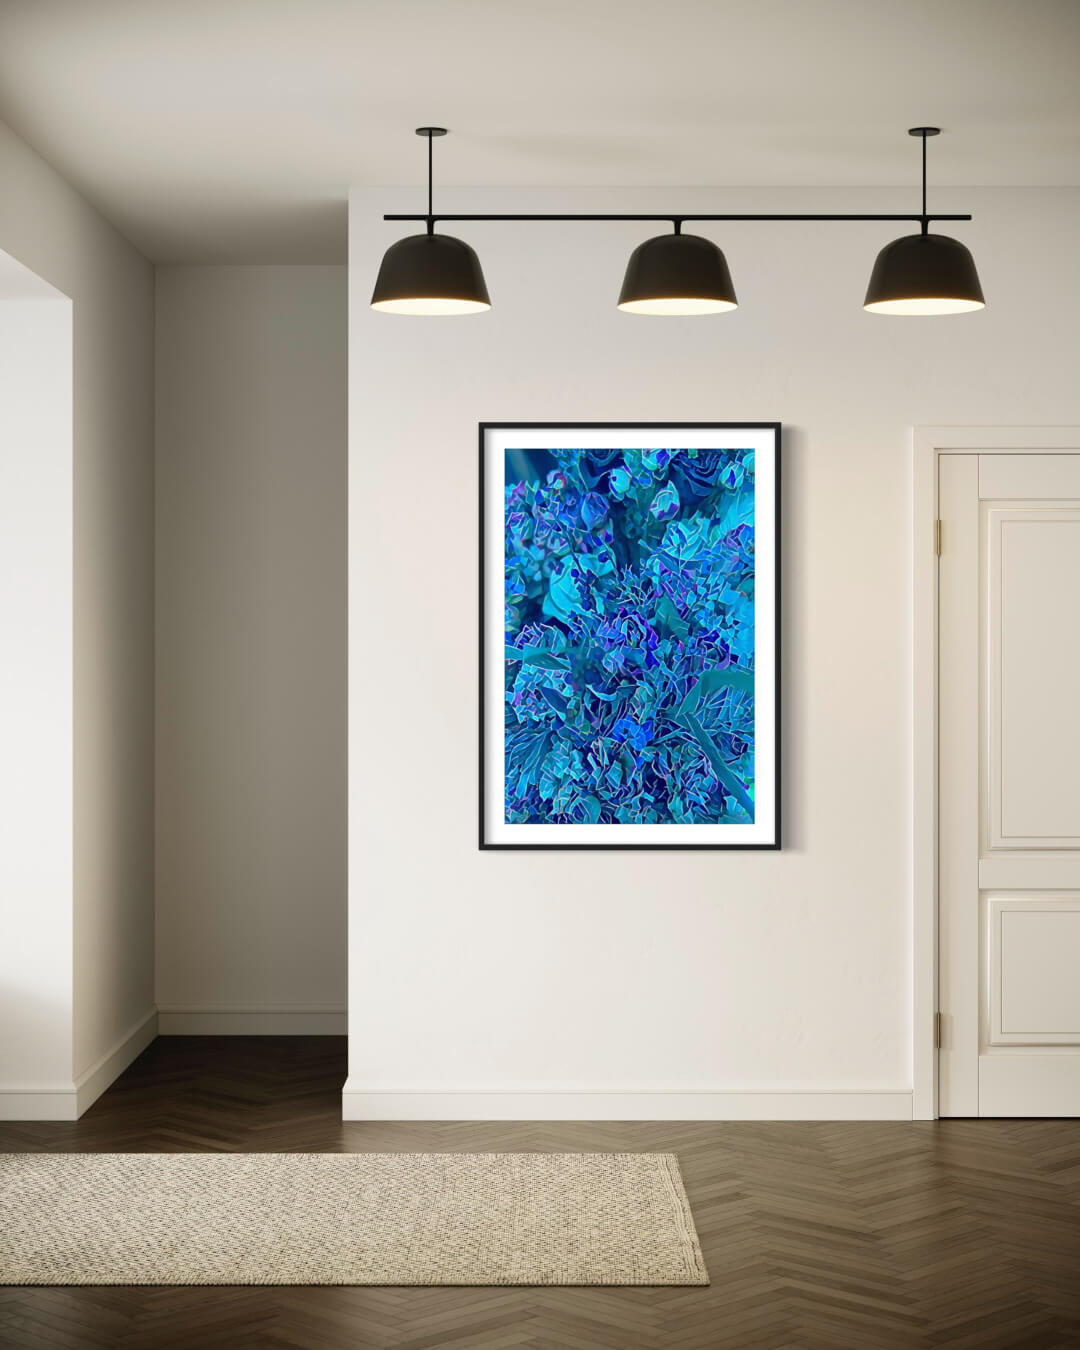 Bearbeitete Fotografie blauer Blüten im Passepartout an cremefarbener Wand in einem hellen Flur